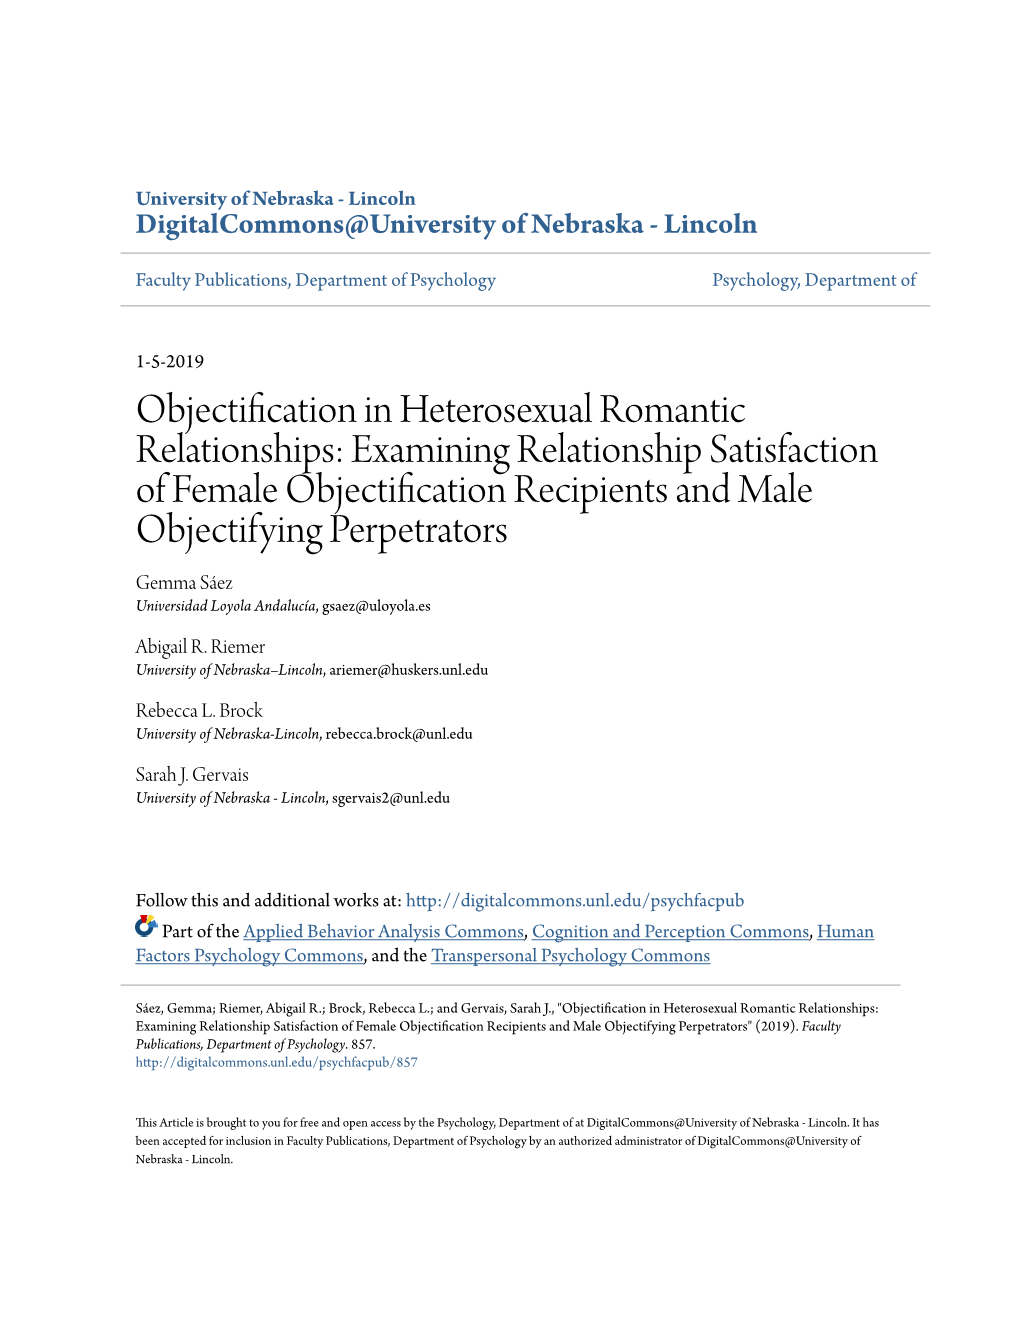 Objectification in Heterosexual Romantic Relationships